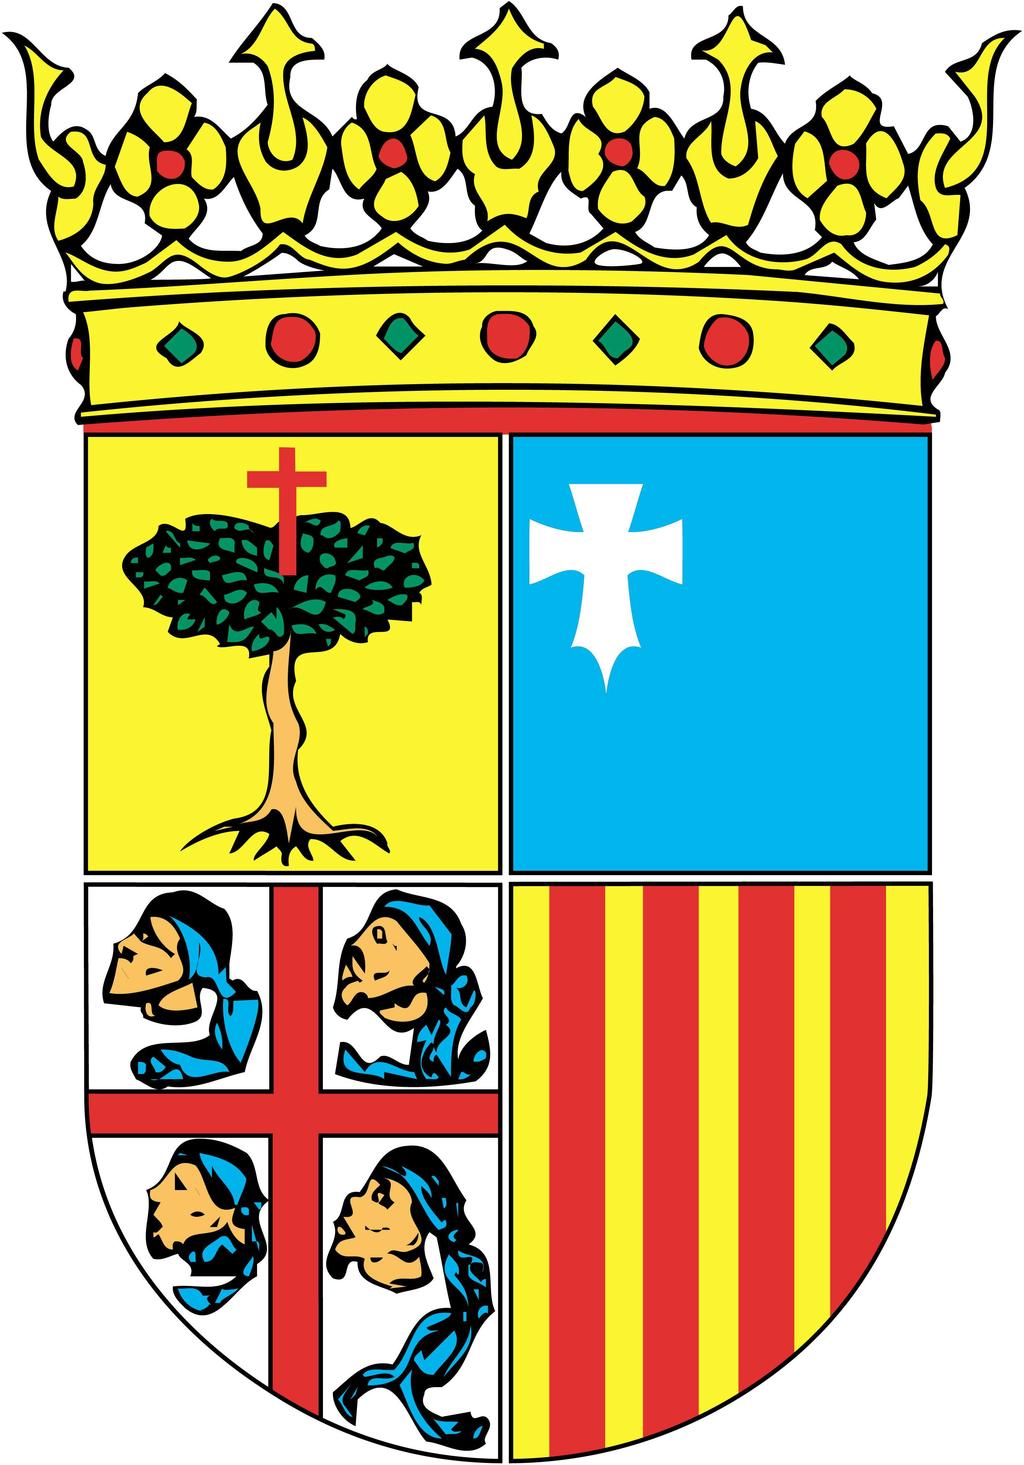 RE 124/2014 Acuerdo 8/2015, de 16 de enero de 2015, del Tribunal Administrativo de Contratos Públicos de Aragón, por el que se resuelve el recurso especial interpuesto por TRADELEO, S.